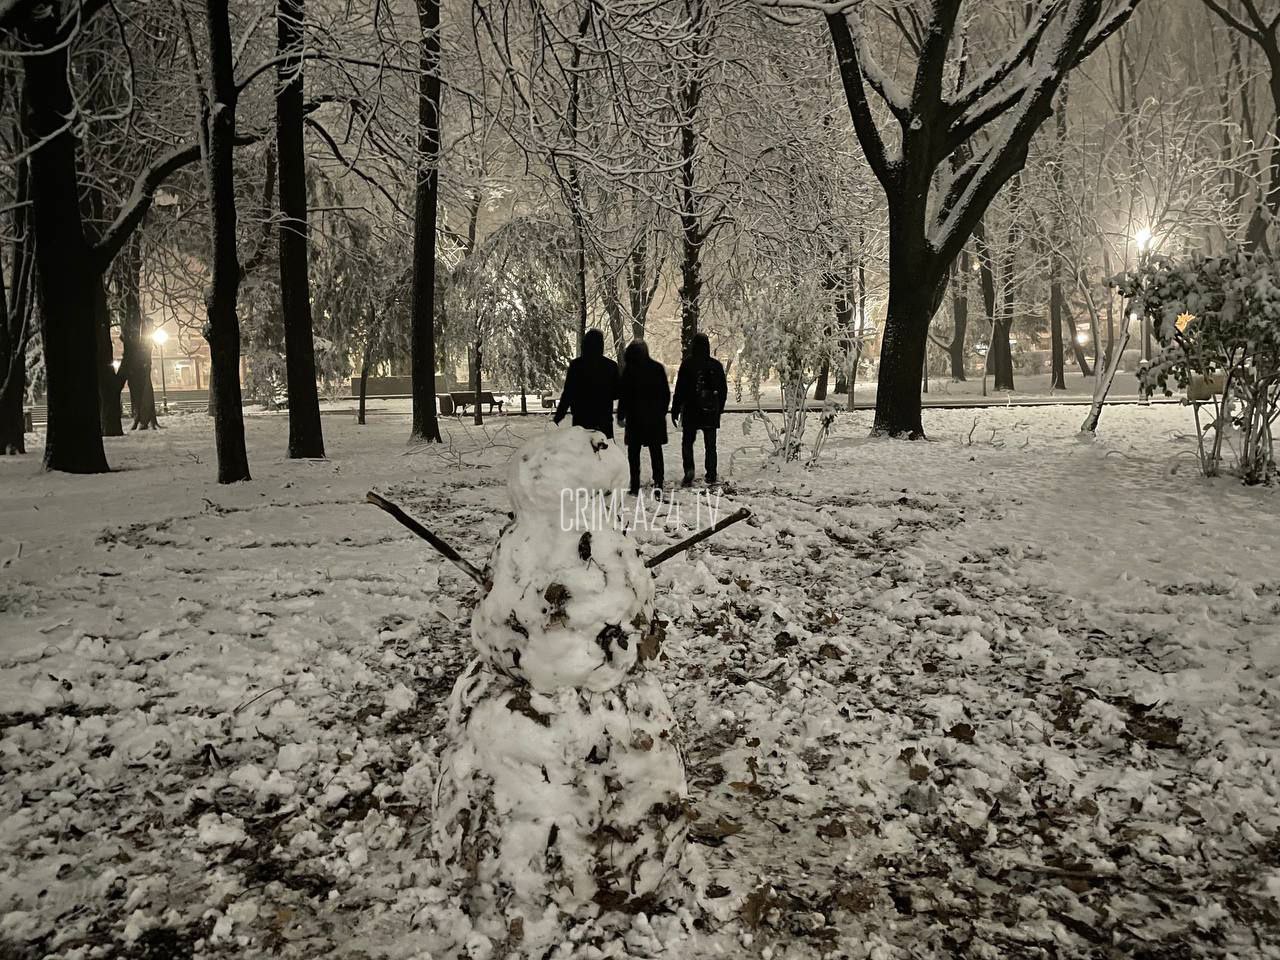 Снежок 1 выпавший ночью. Слепящий снег. Зима Симферополь 2014 год фото. Такой красивый зимний Симферополь. В Крыму выпал первый снег 24 сентября.